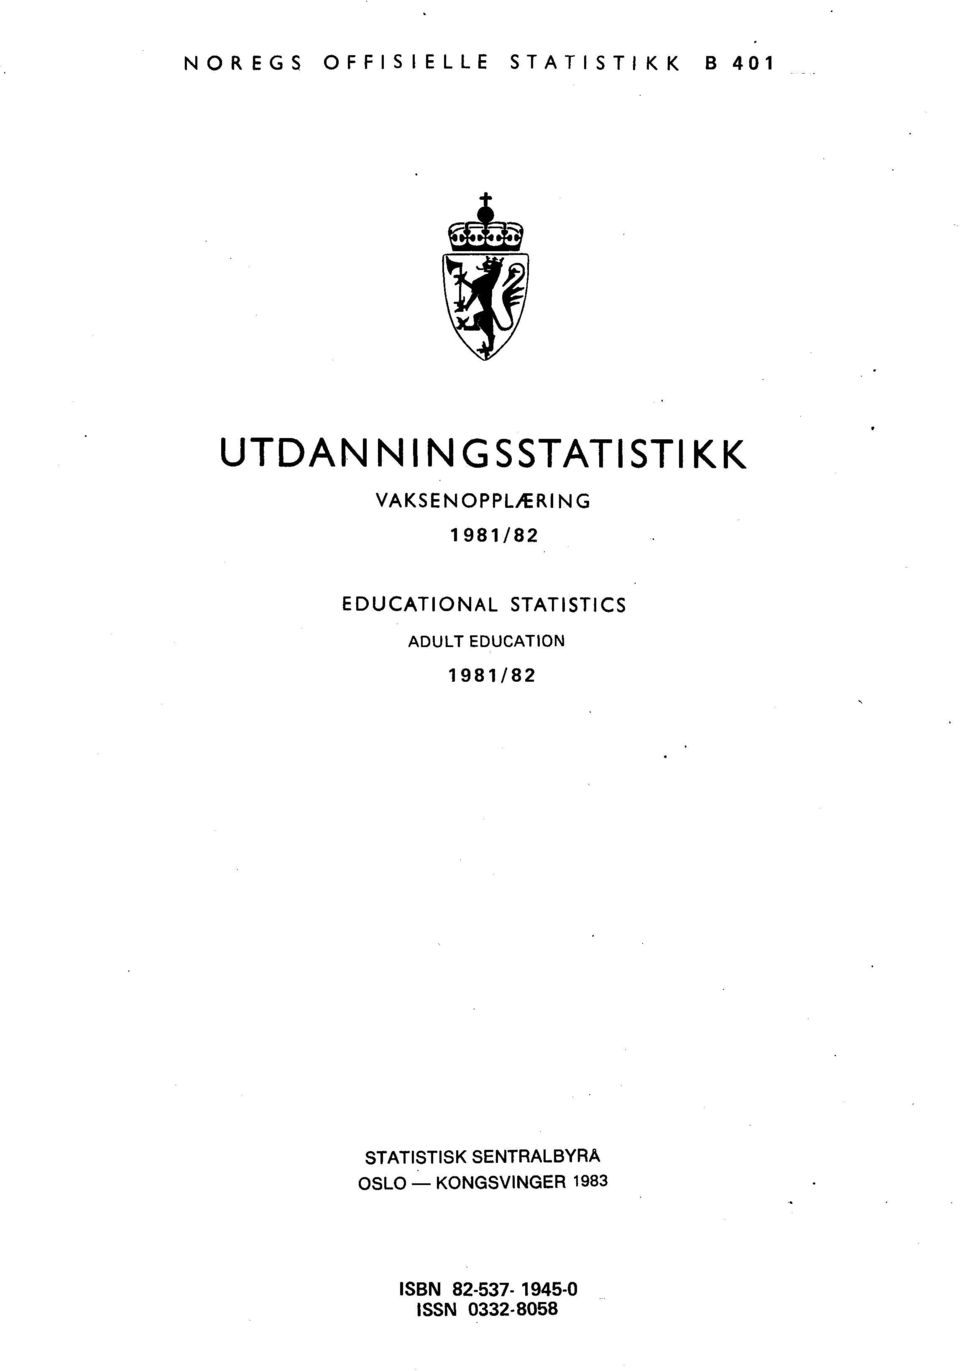 EDUCATIONAL STATISTICS ADULT EDUCATION 1981/82